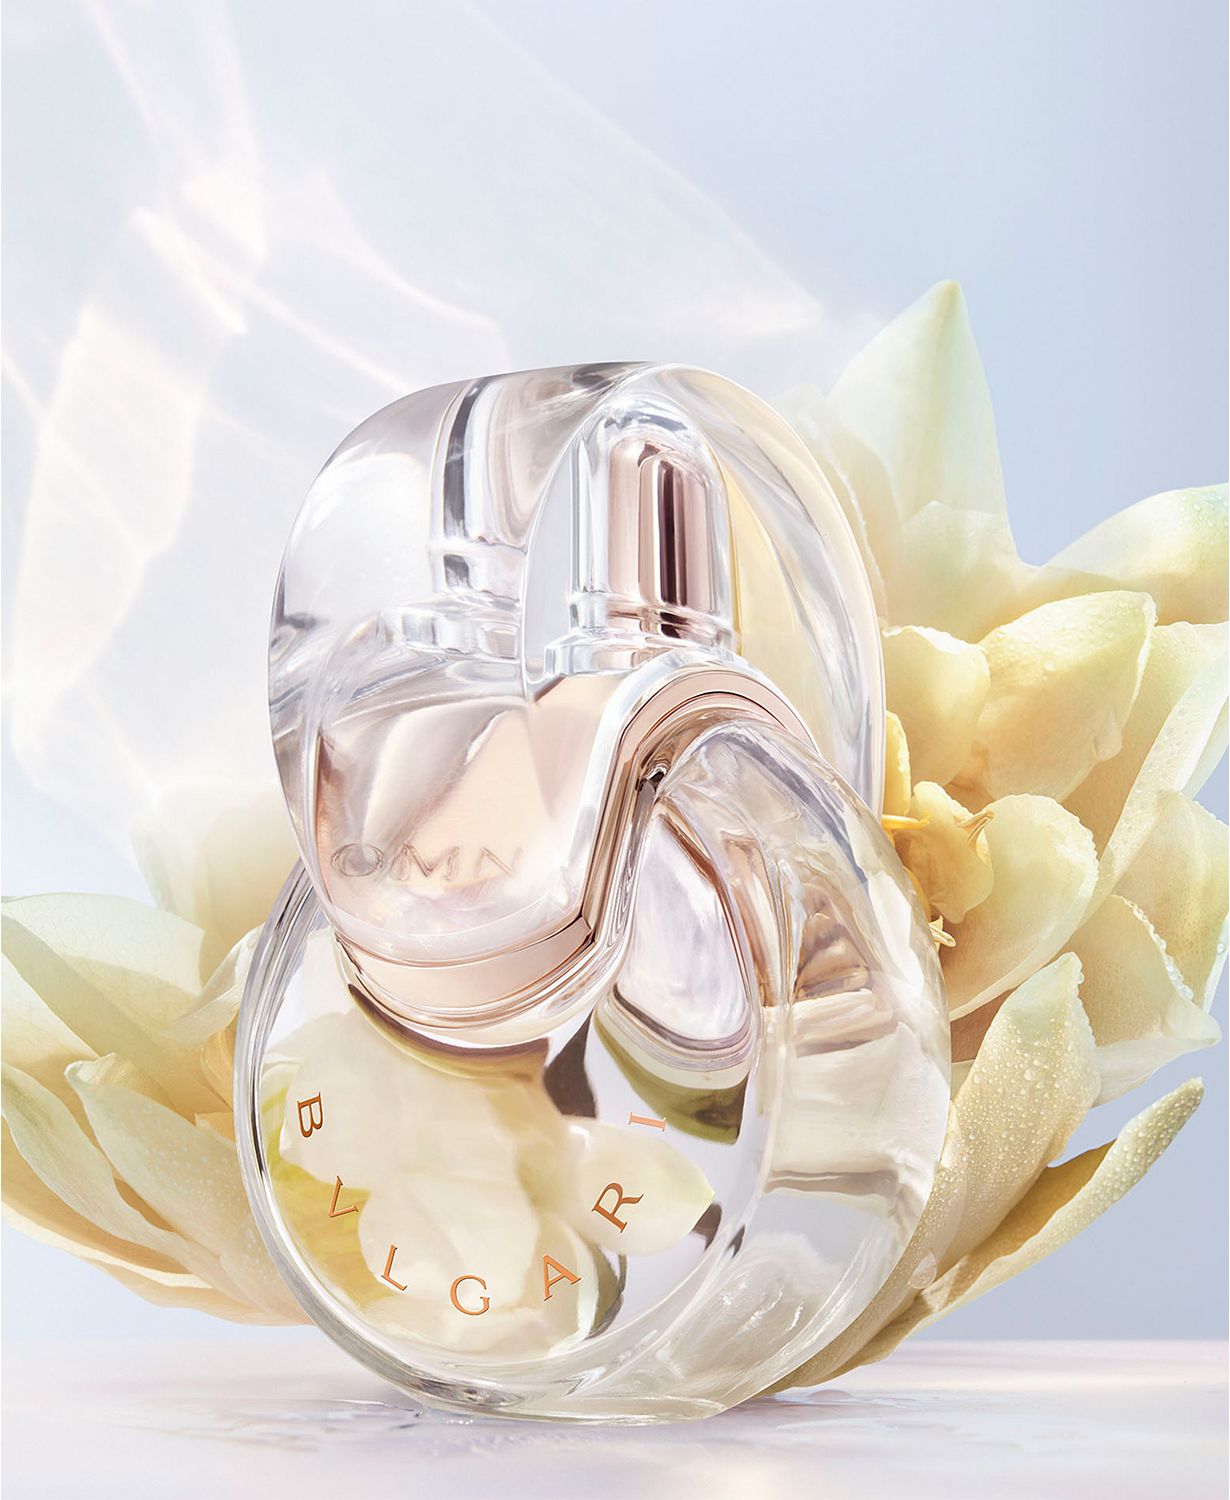 4-Pc. Rose Goldea & Omnia Mini Fragrance Gift Set, Created for Macy’s